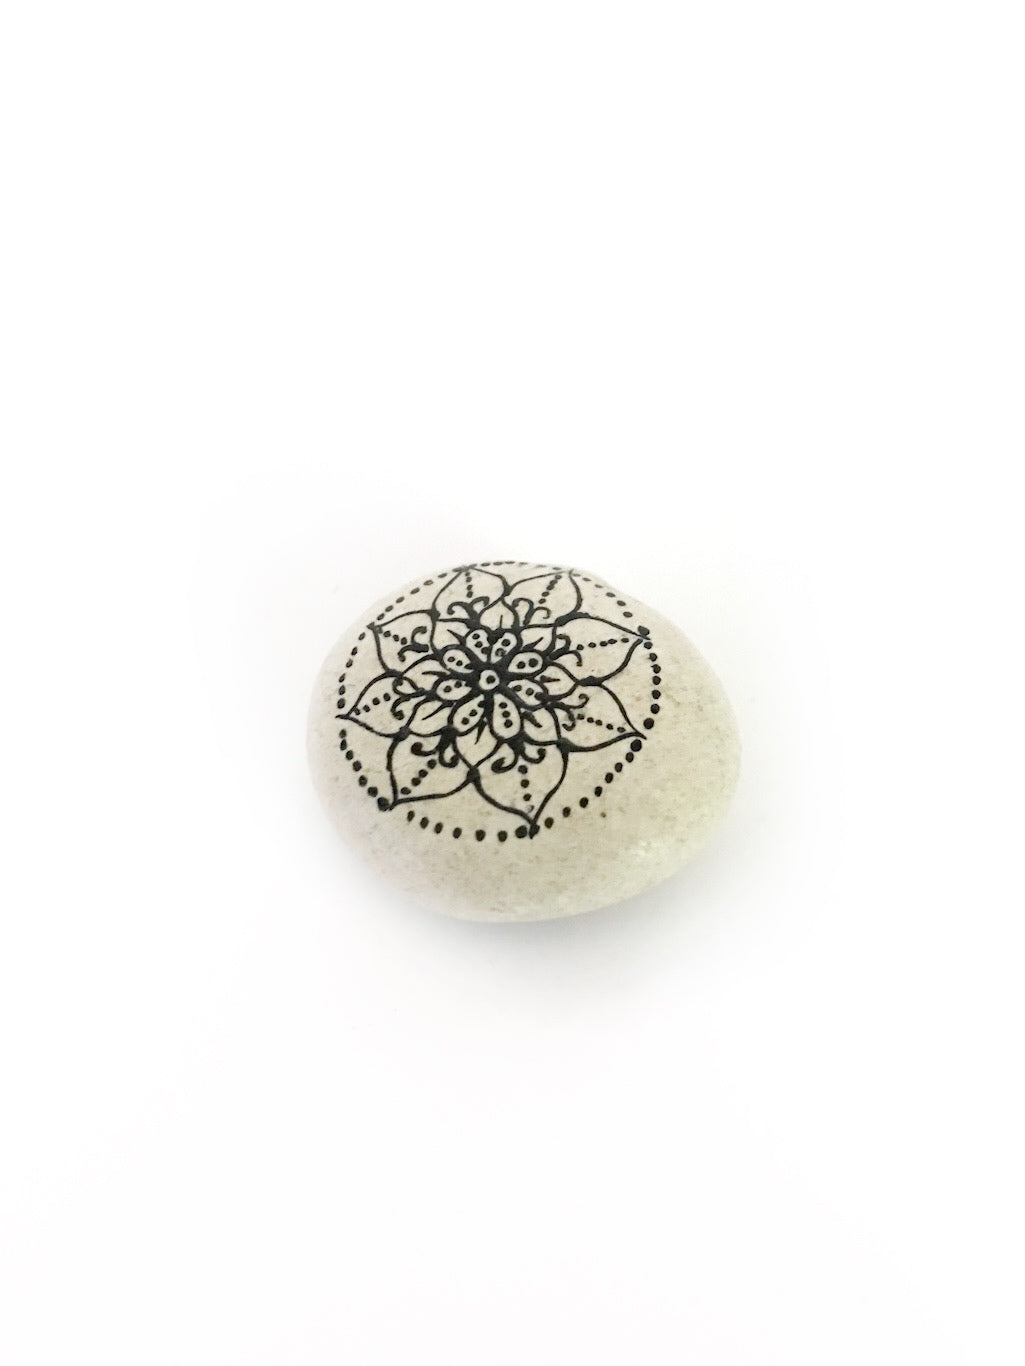 Mandala stone magnet - various mandalas